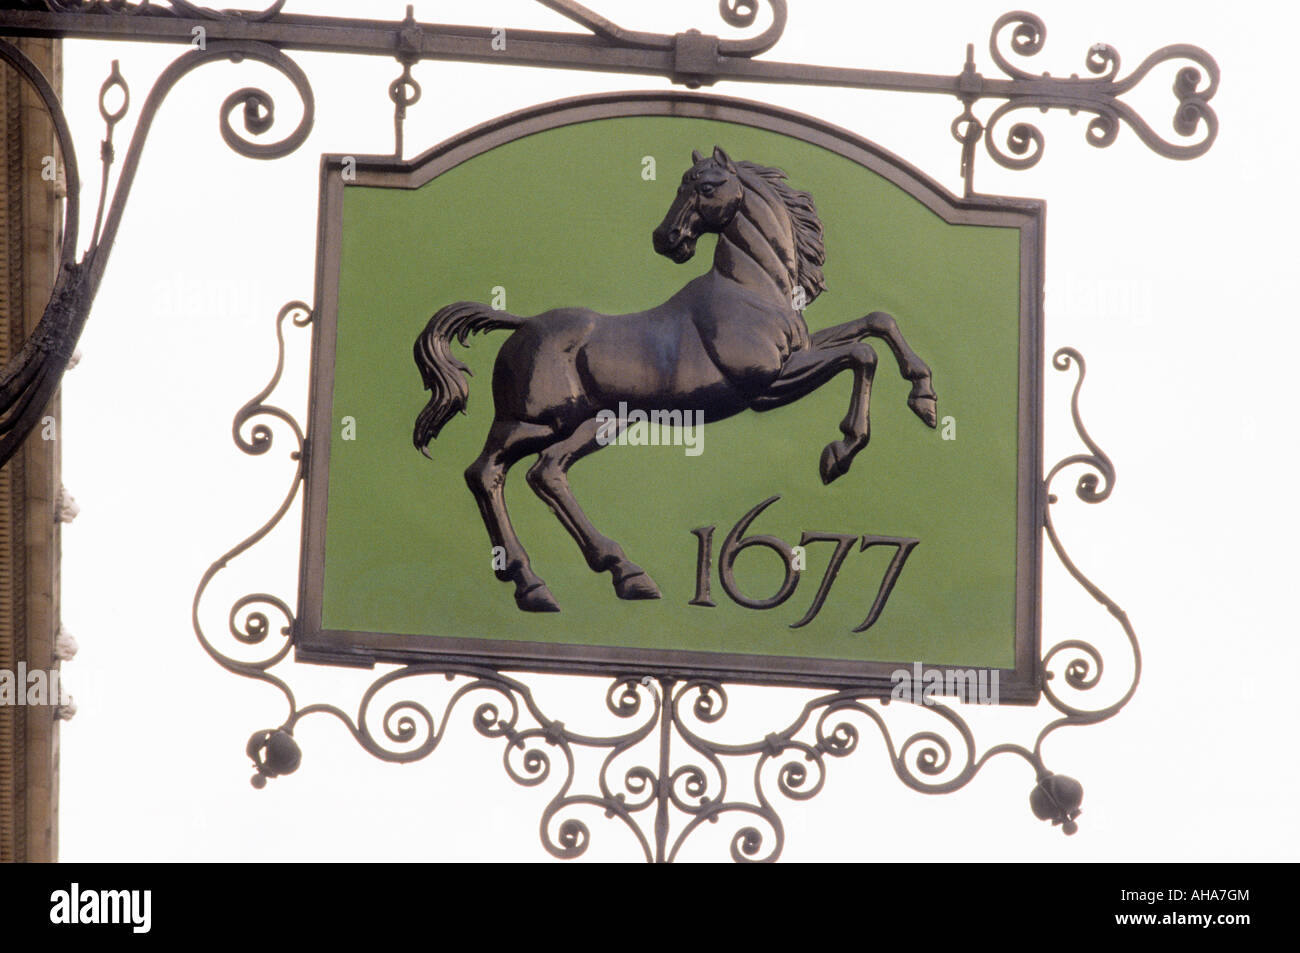 Lombard Street City de Londres la Lloyds Bank Street sign banques britanniques signe vieux 1677 vintage England UK cheval noir Banque D'Images